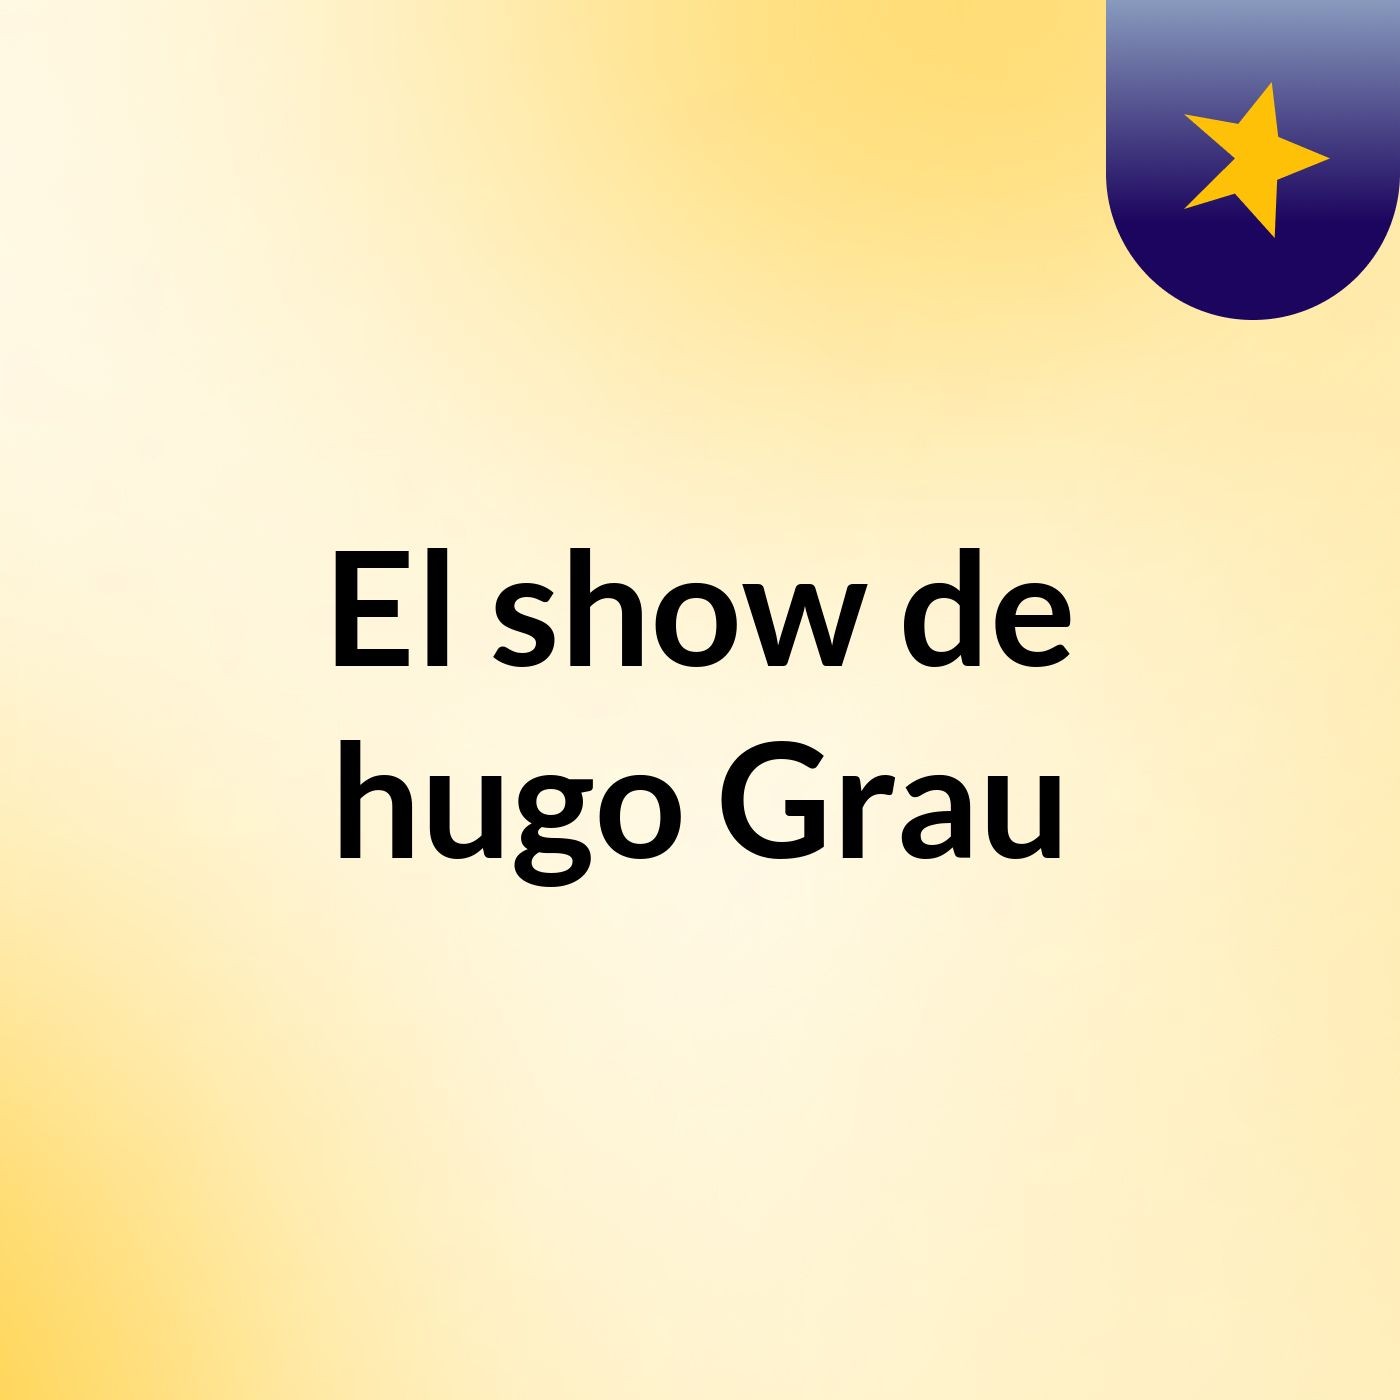 Episodio 3 - El show de hugo Grau